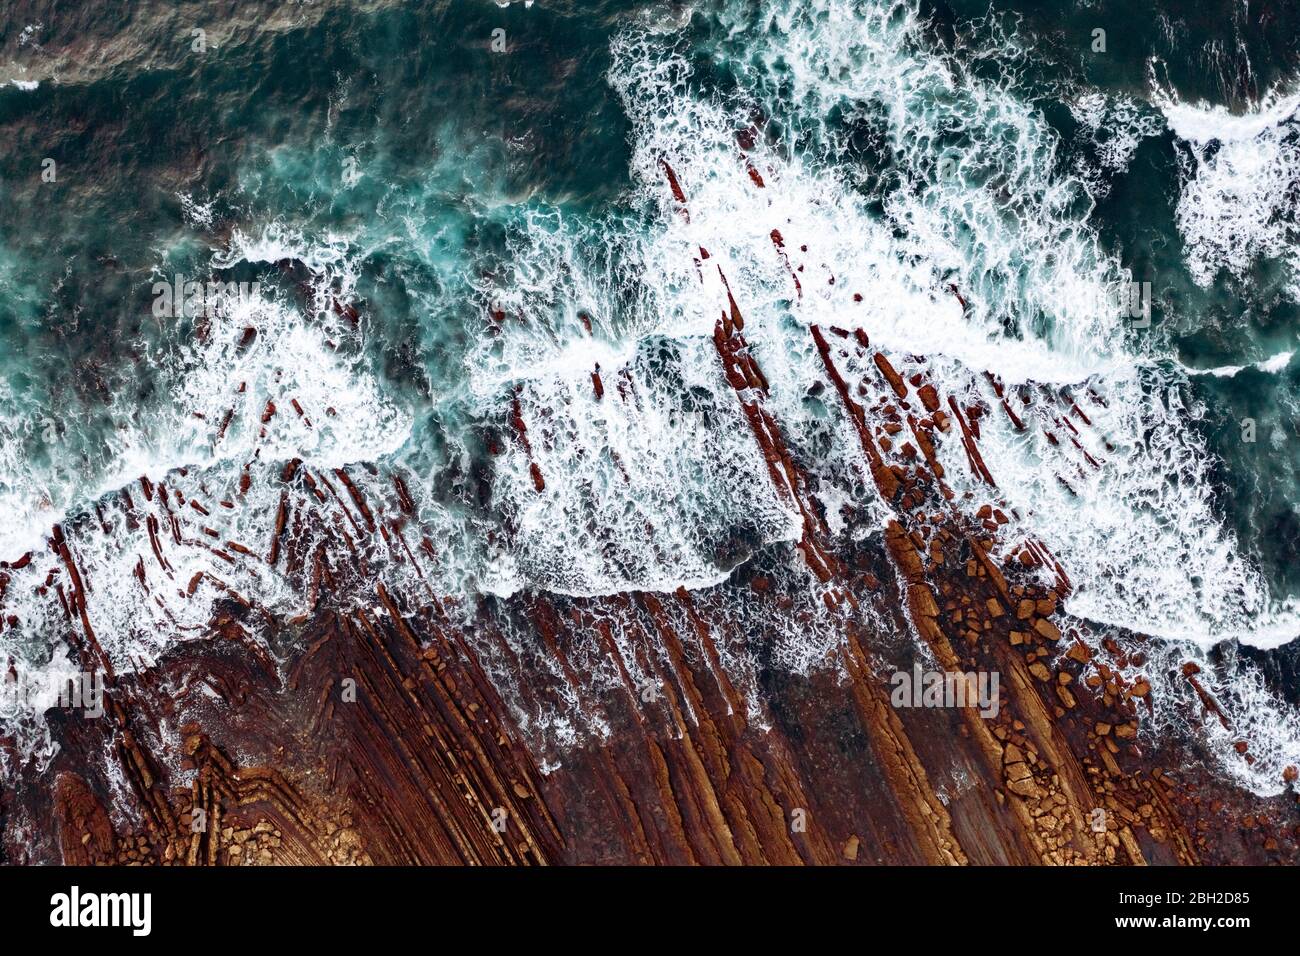 Espagne, Vizcaya, Bilbao, vue aérienne des vagues de l'océan se brossant contre la côte rocheuse Banque D'Images